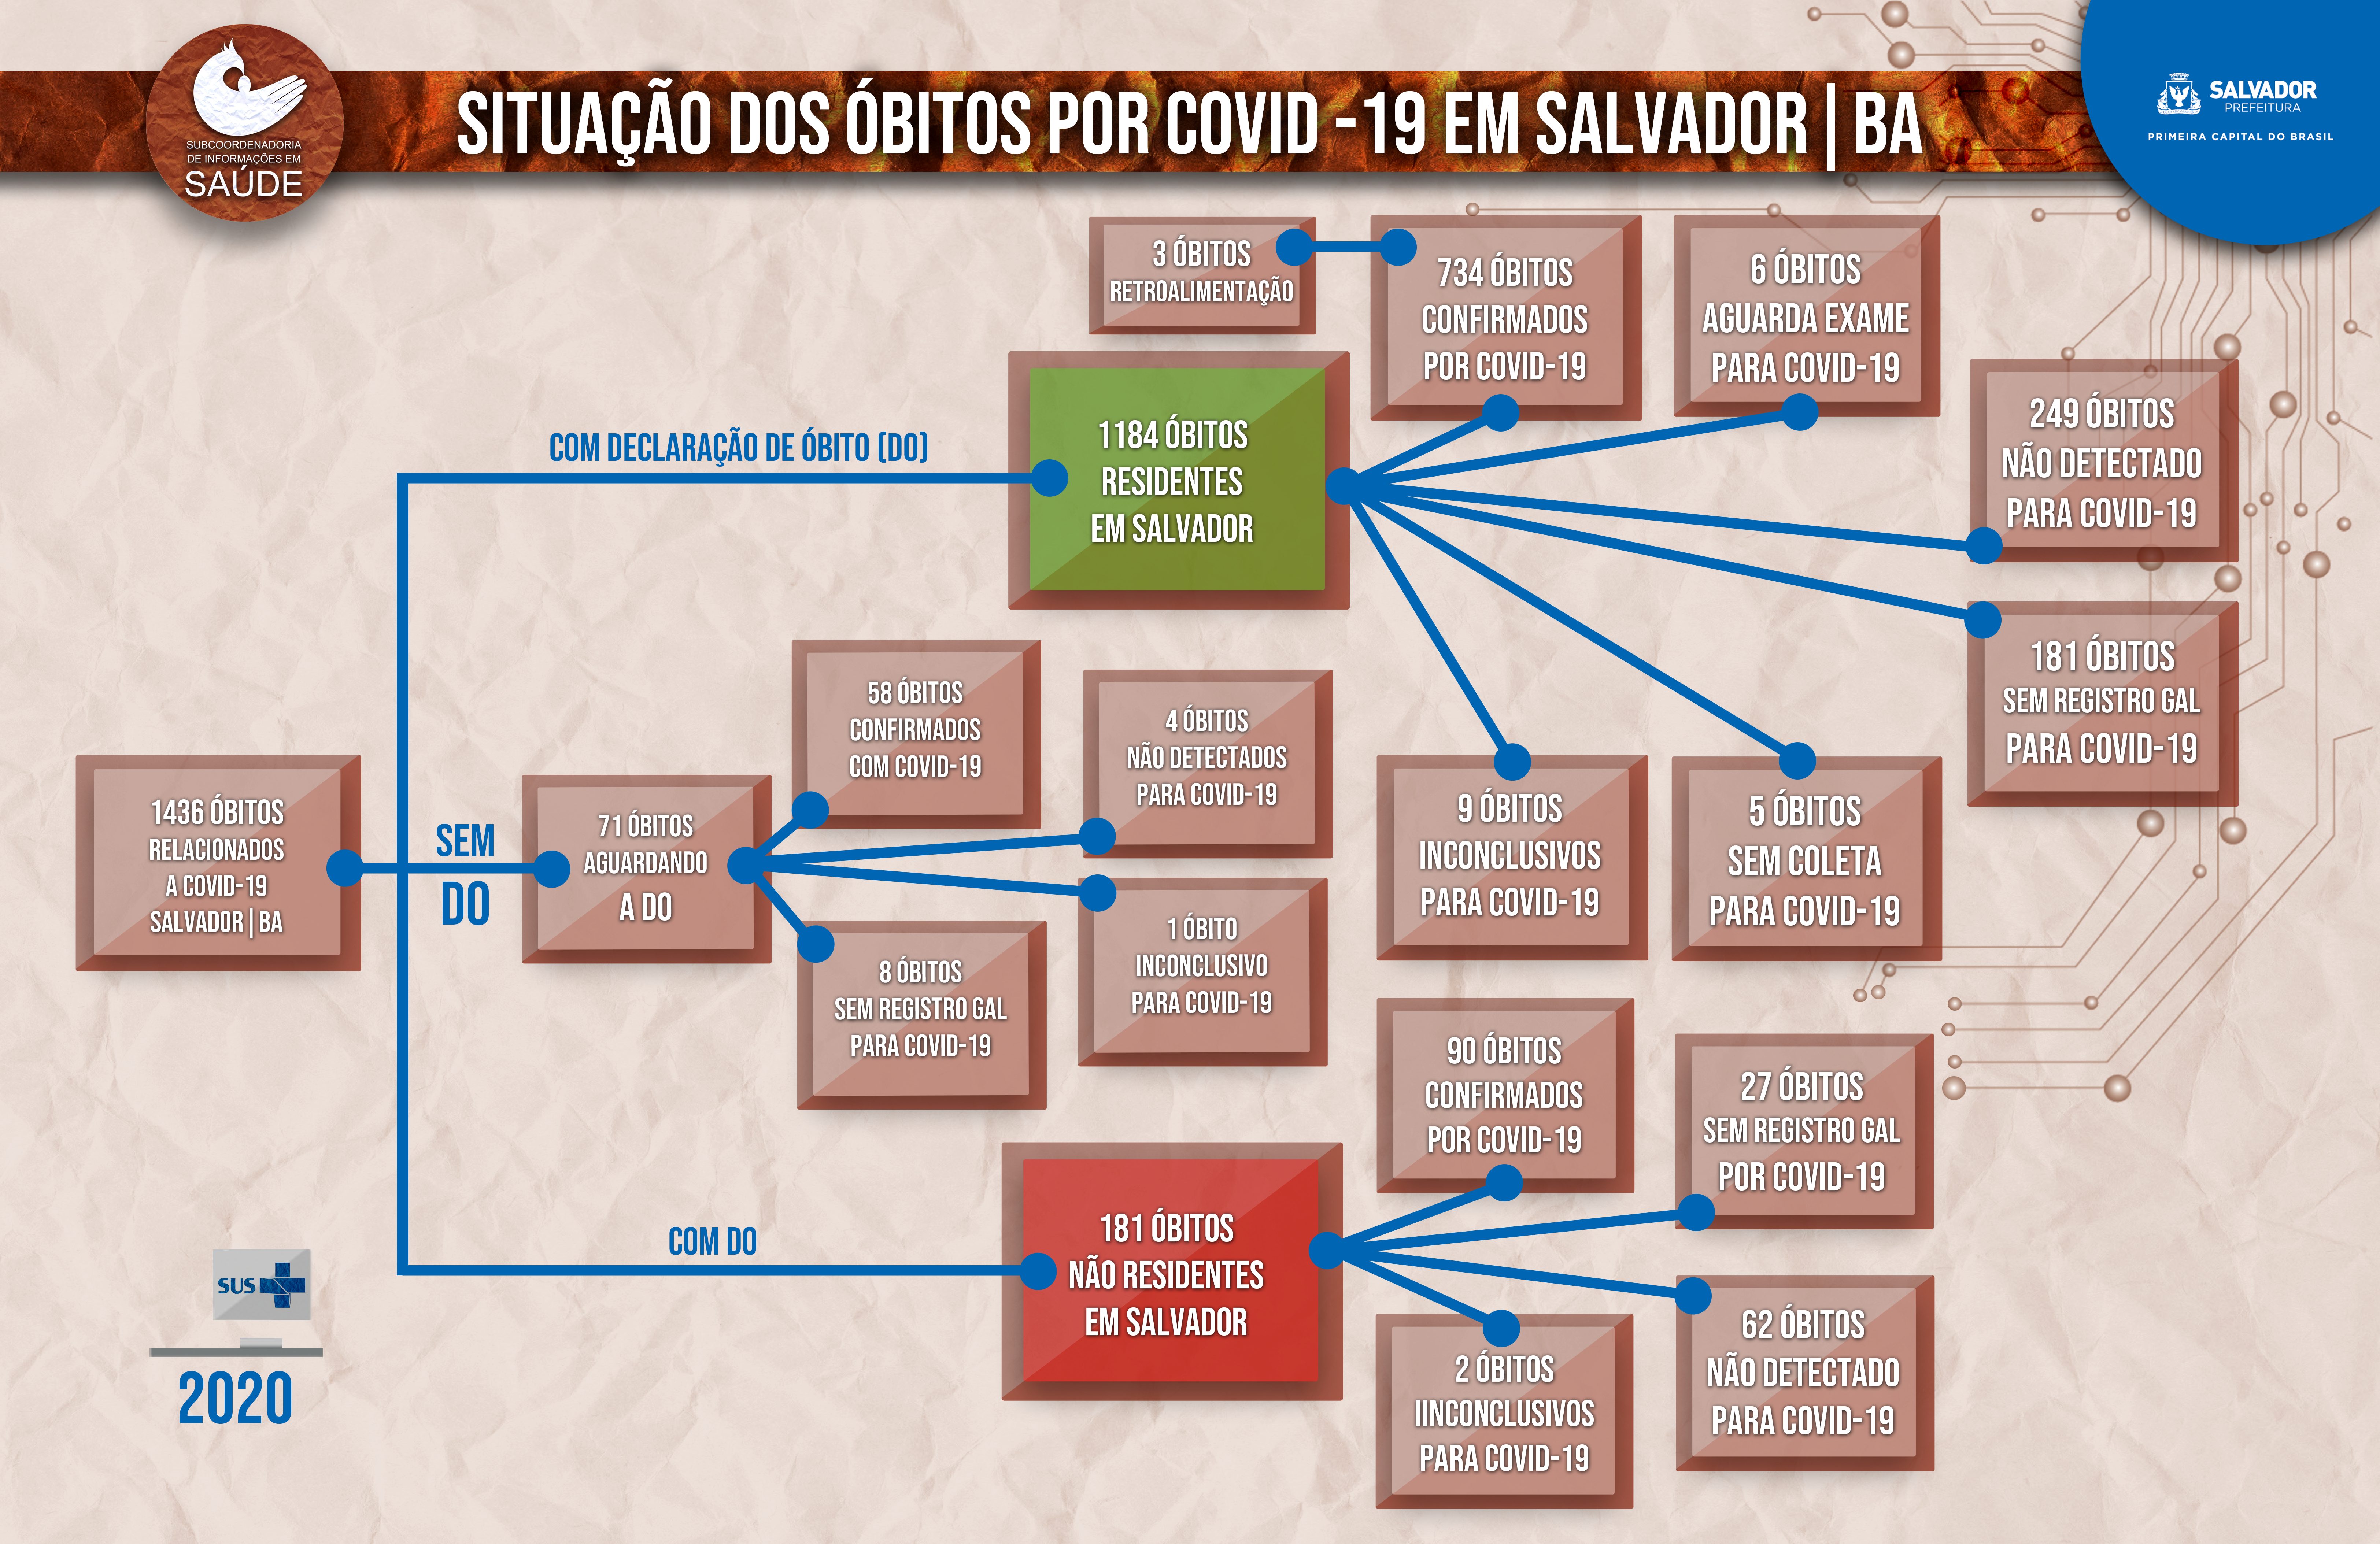 Vigilância do Óbito no Contexto da Pandemia de Covid-19 em Salvador/BA
Clique na imagem para baixar o Boletim SUIS 03